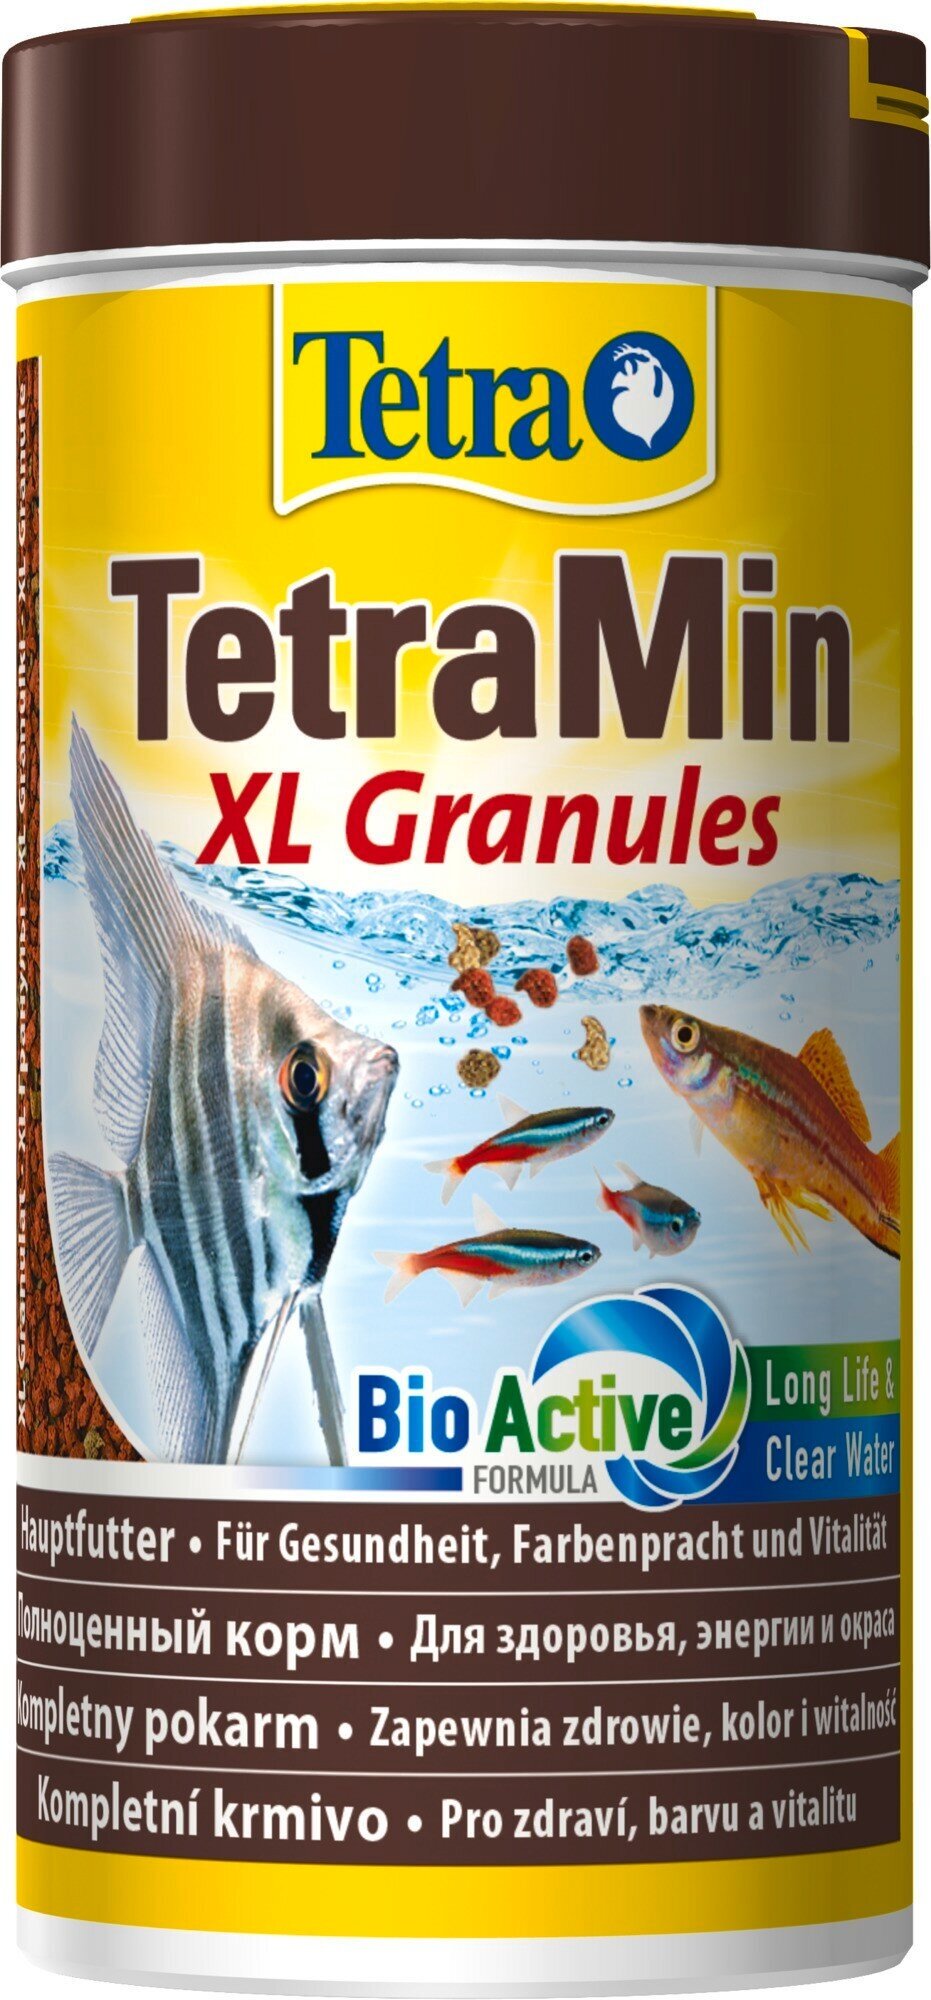    TetraMin XL Granules 250  